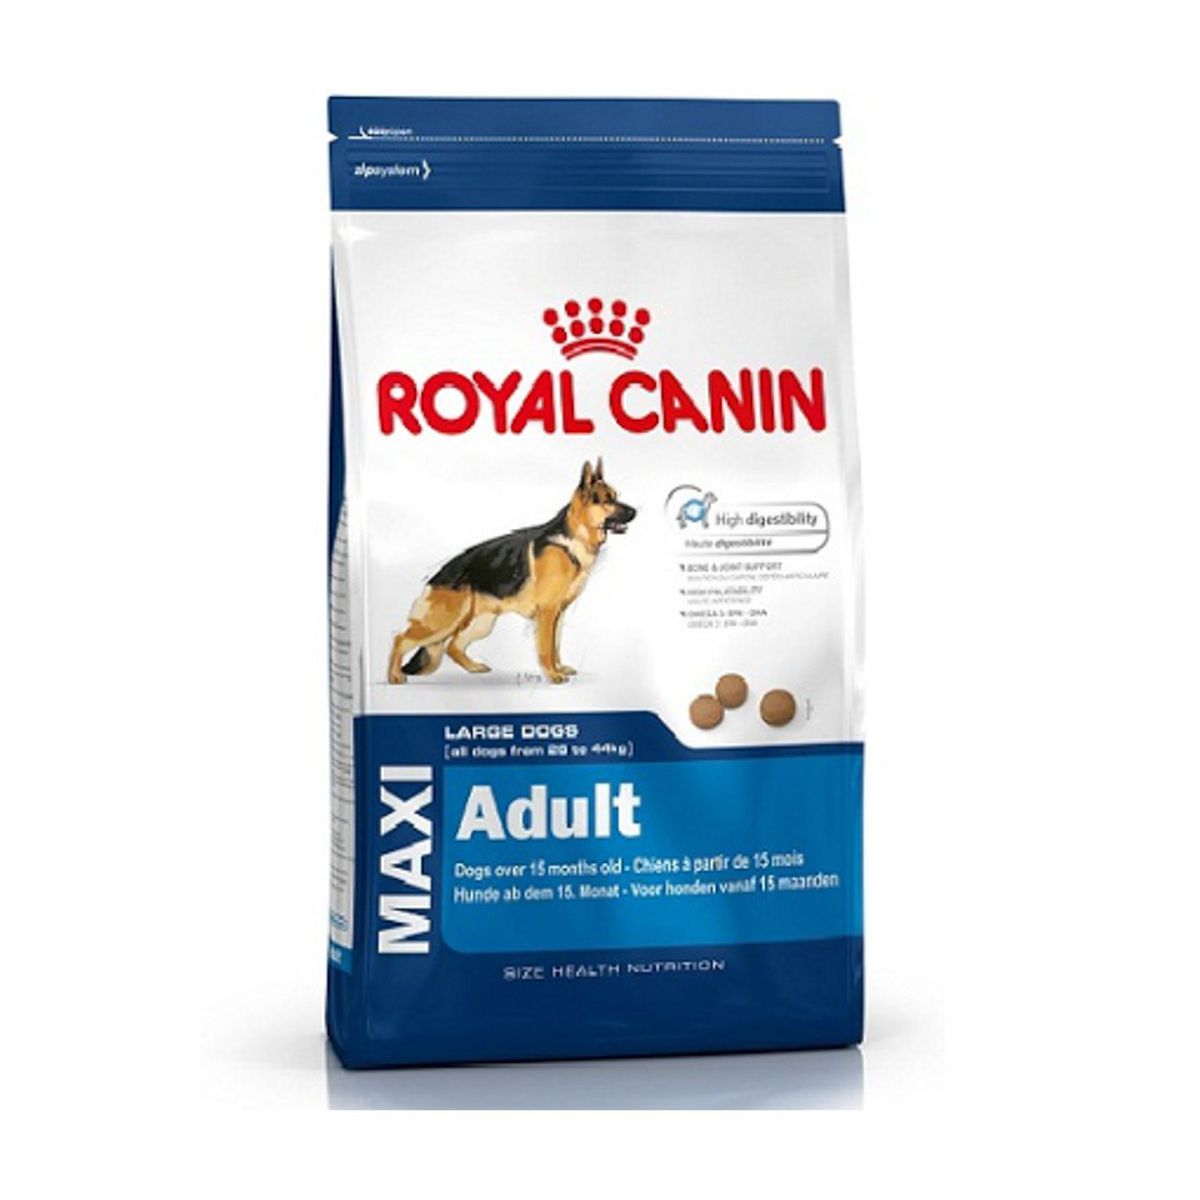 Royal Canin Kuru Kopek Mamasi Fiyatlari